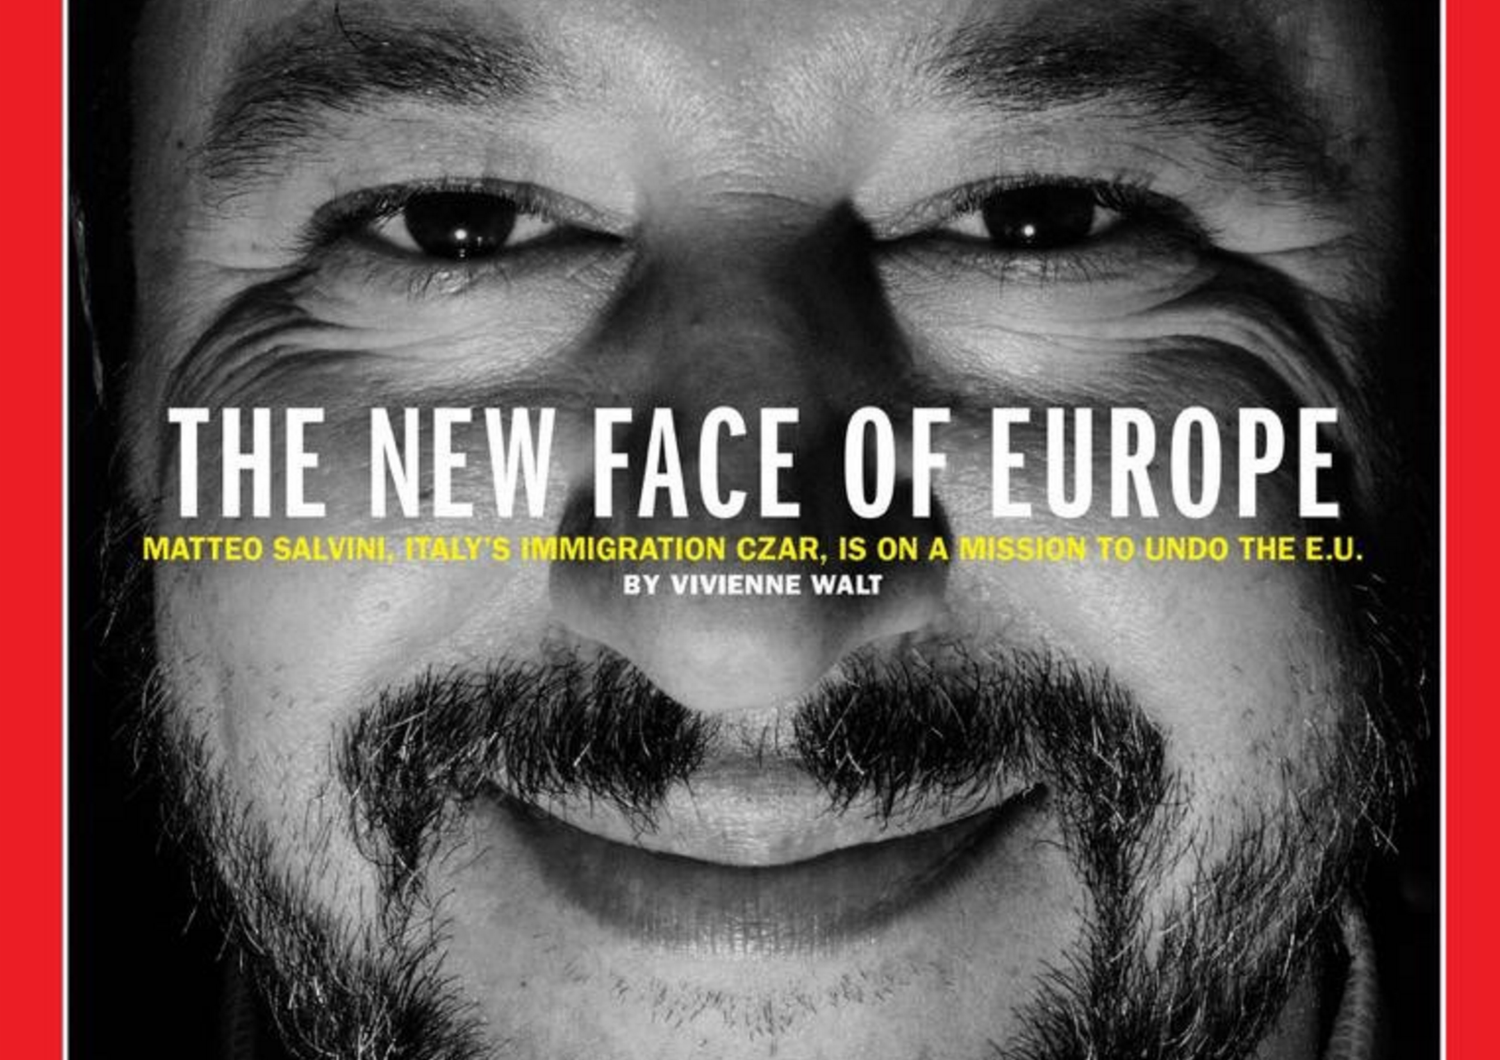 &nbsp;Matteo Salvini sulla copertina del Time